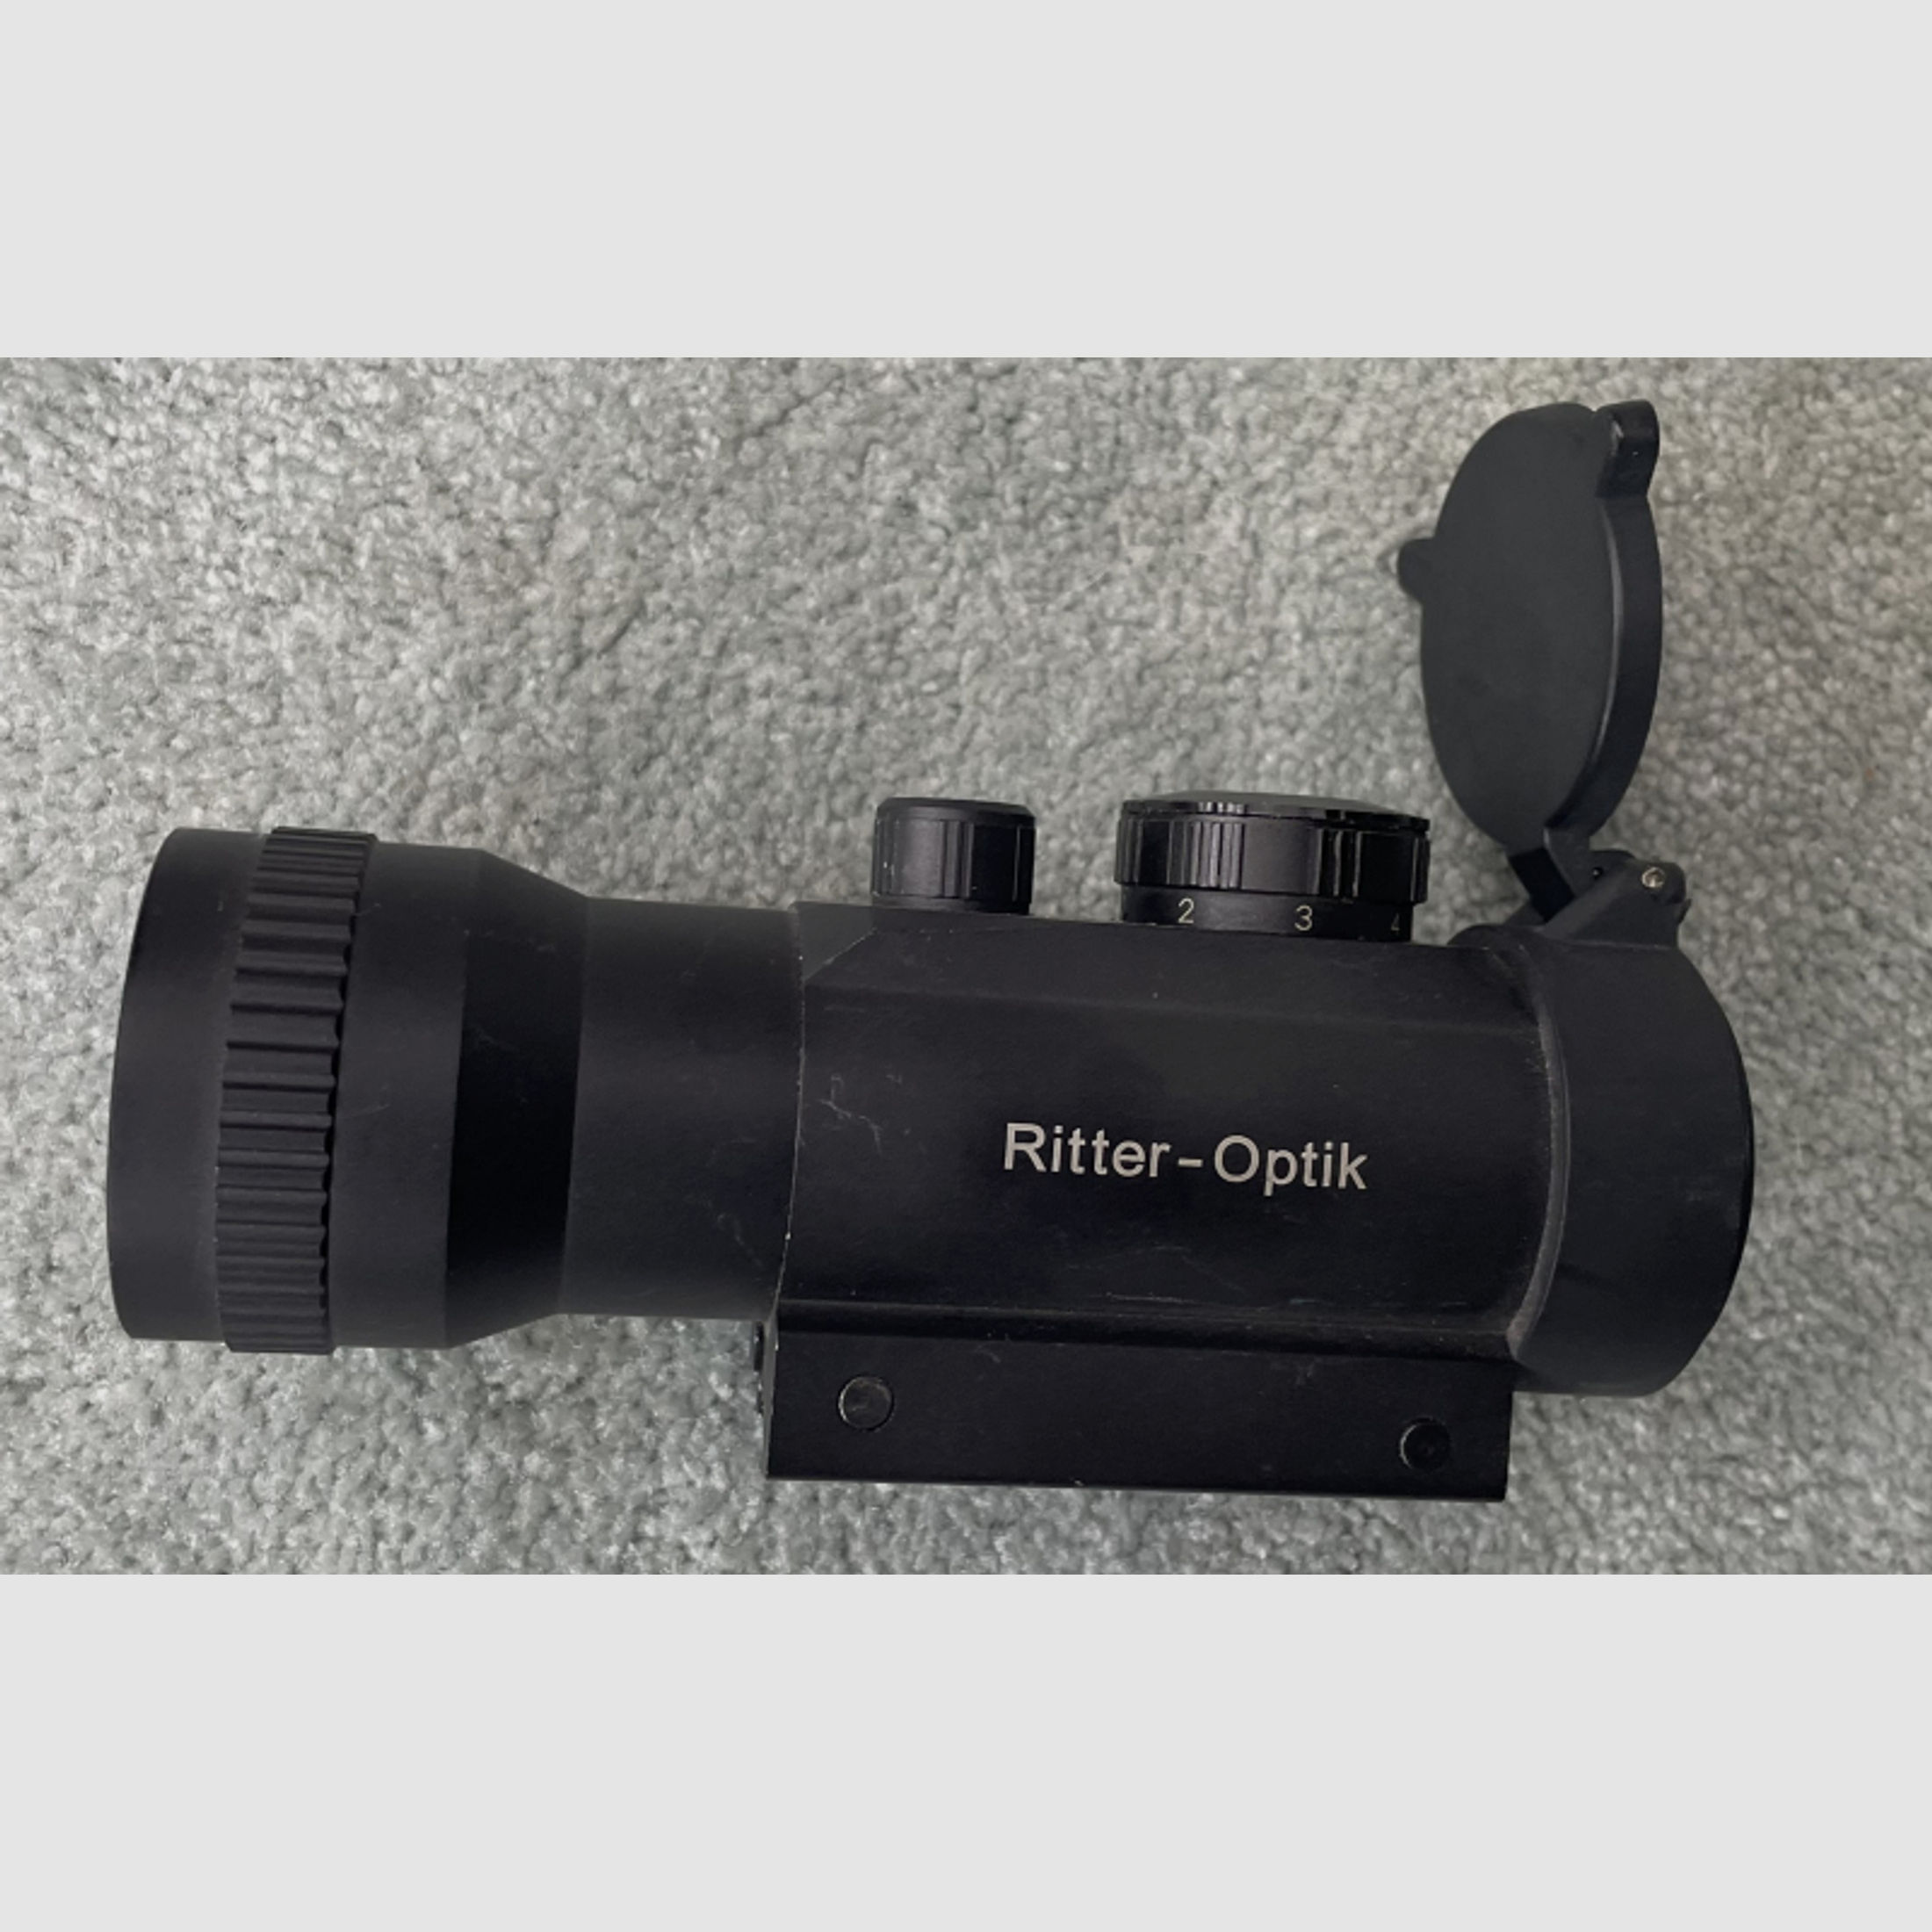 Ritter-Optik Zieloptik